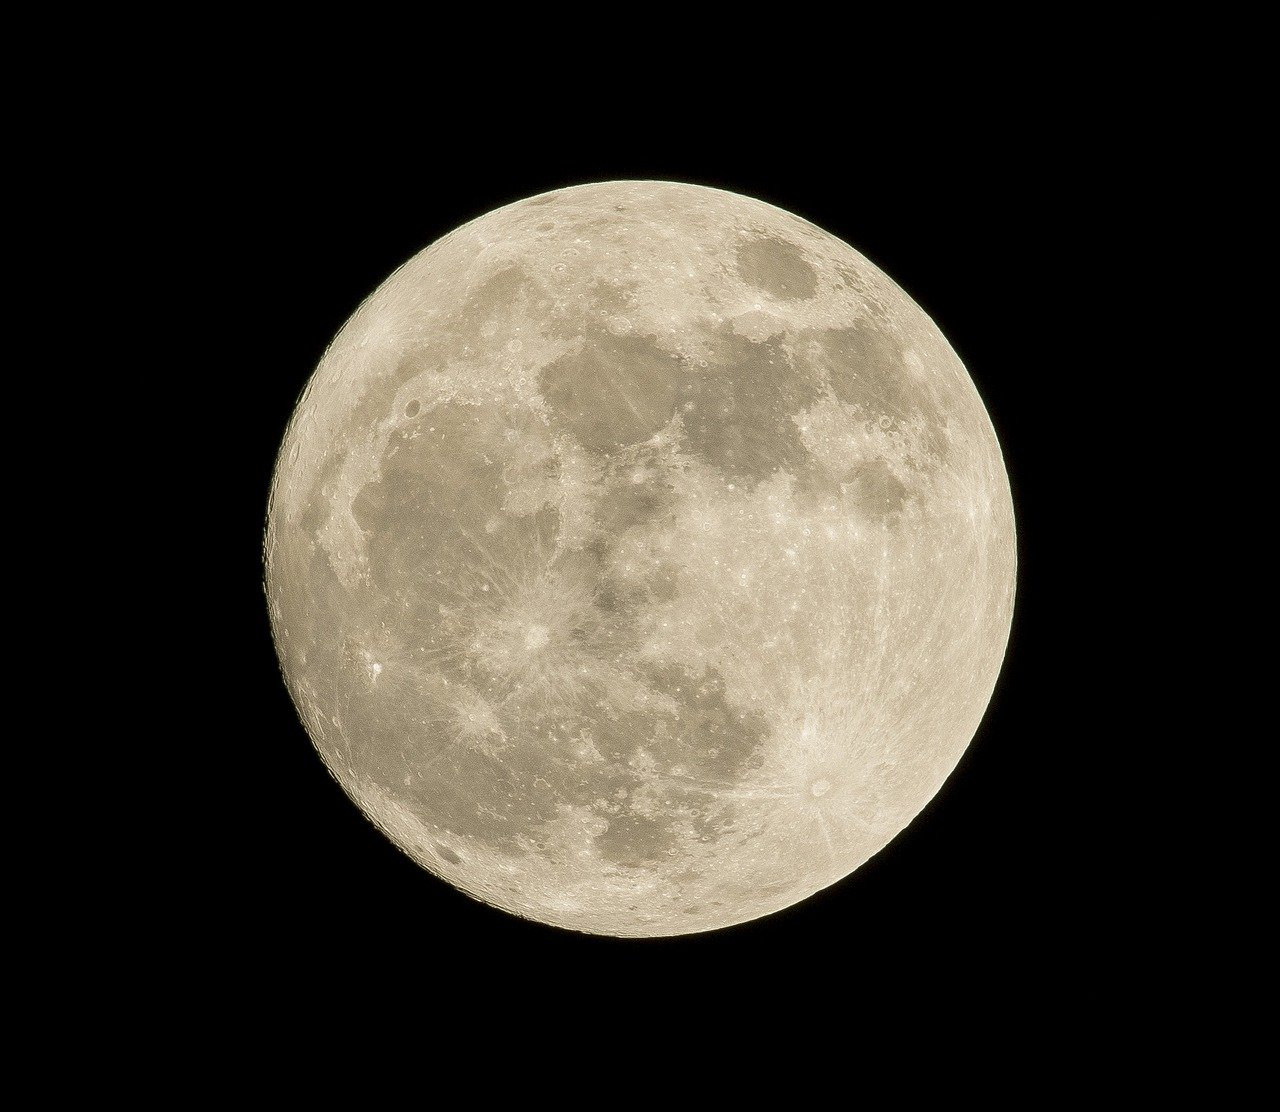 夜空に浮かぶ満月をあなただけのものに、浮遊する月形ランプが最高におしゃれ